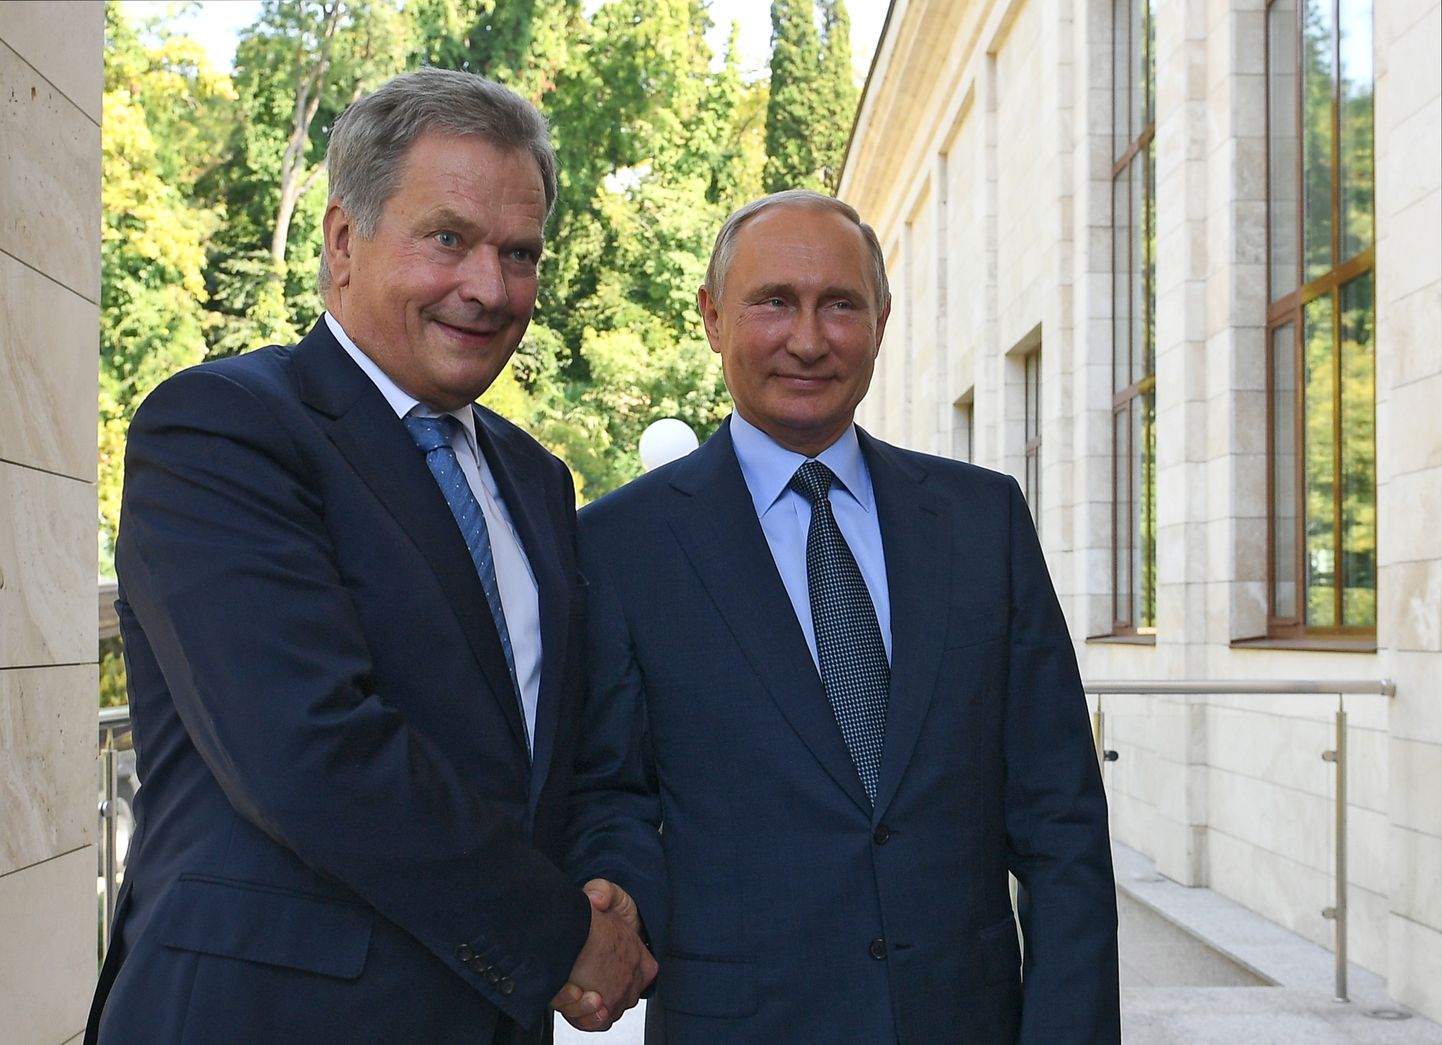 Soome president Sauli Niinistö (vasakul) ja Venemaa president Vladimir Putin (paremal) 2018. aastal.